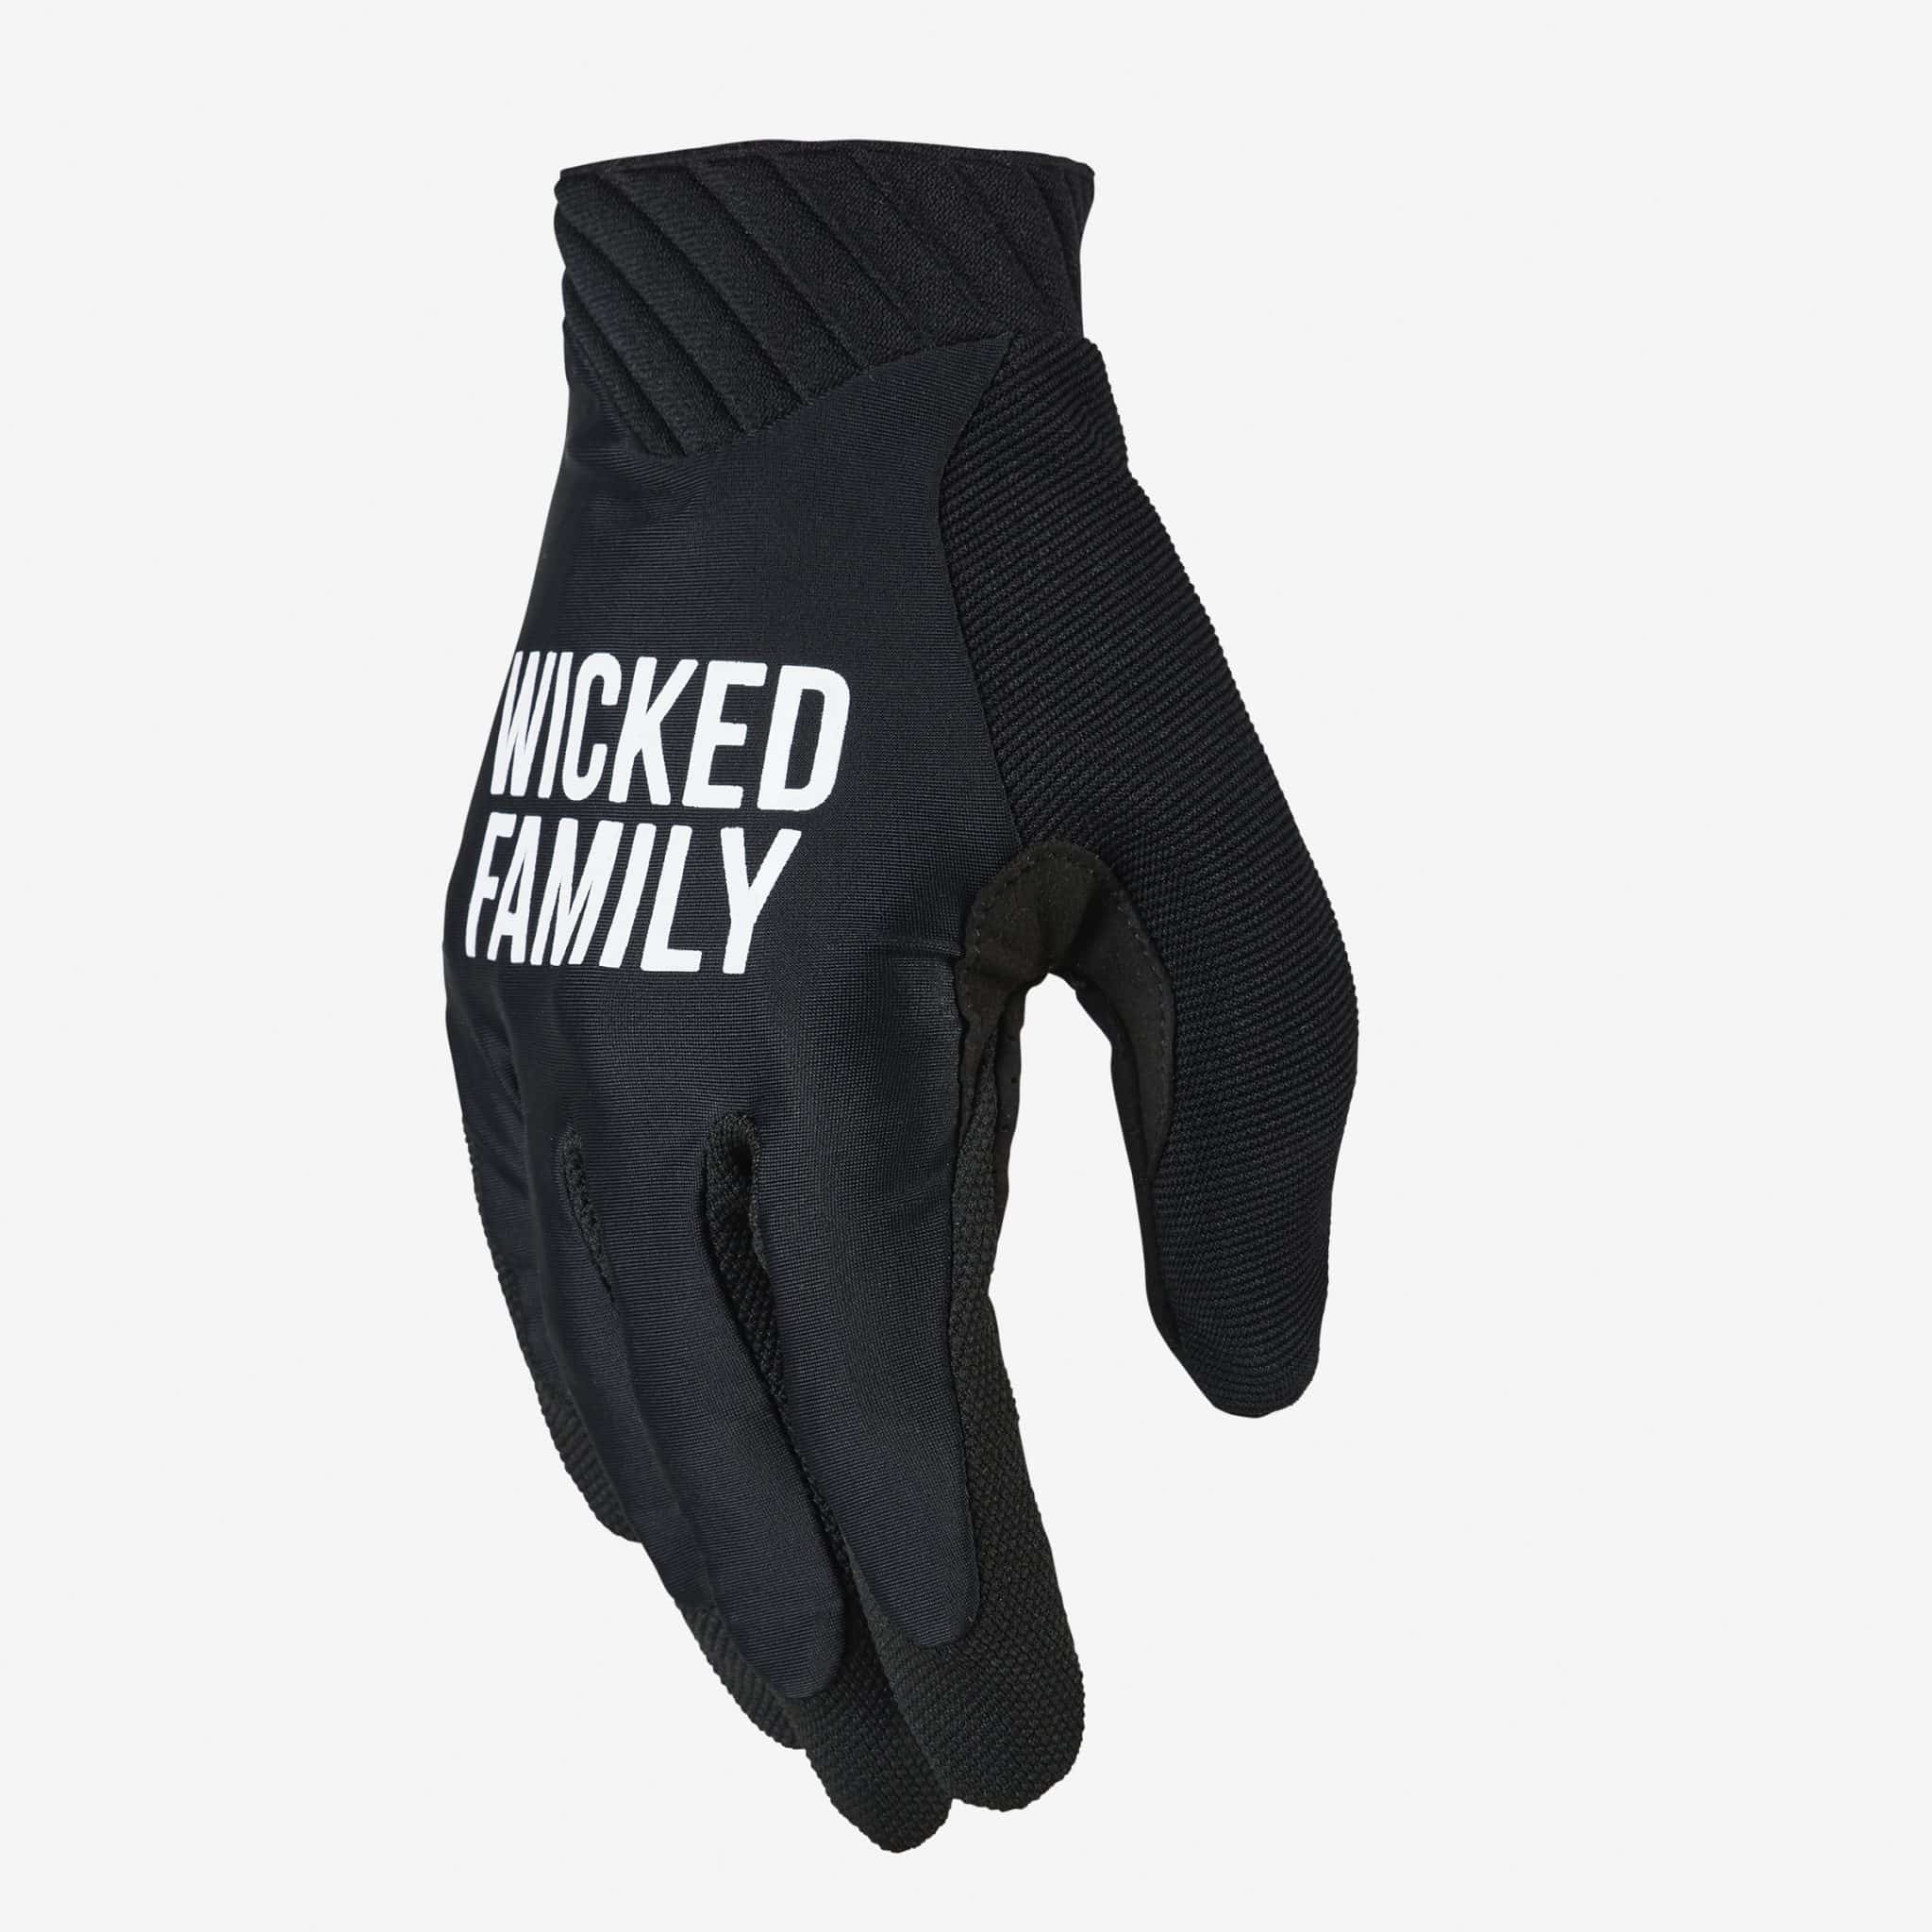 Wicked & Motocross bike MX Family gloves - gloves gear Dirt -